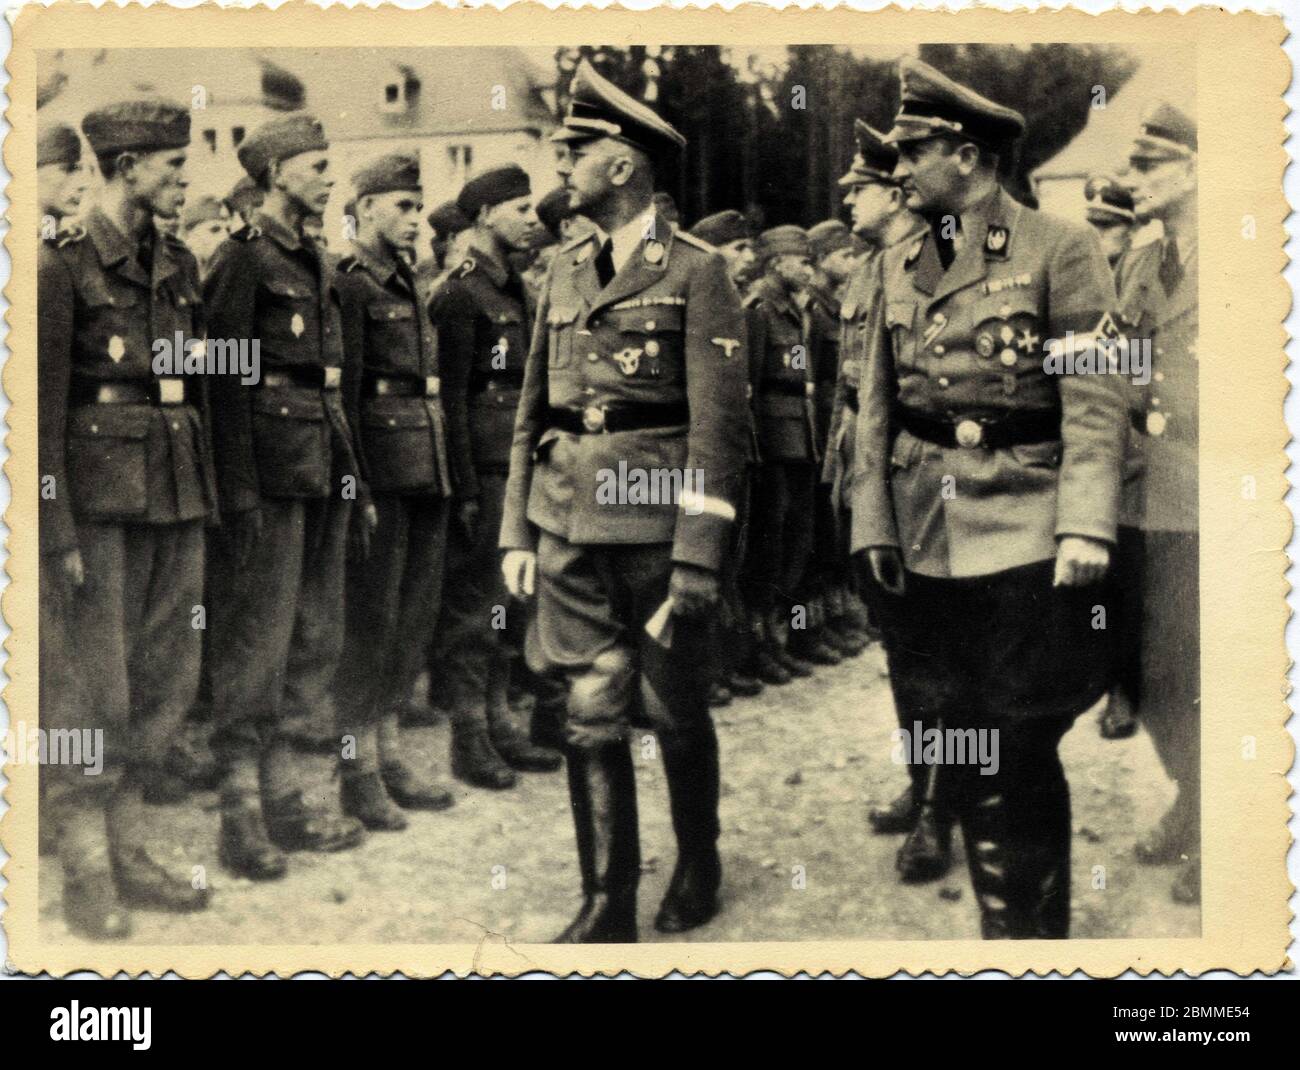 Heinrich Himmler (1900-1945); homme d'Etat allemand sous le 3eme Reich passe en revue les troupes. Carta postale, 1943 environ. Foto Stock